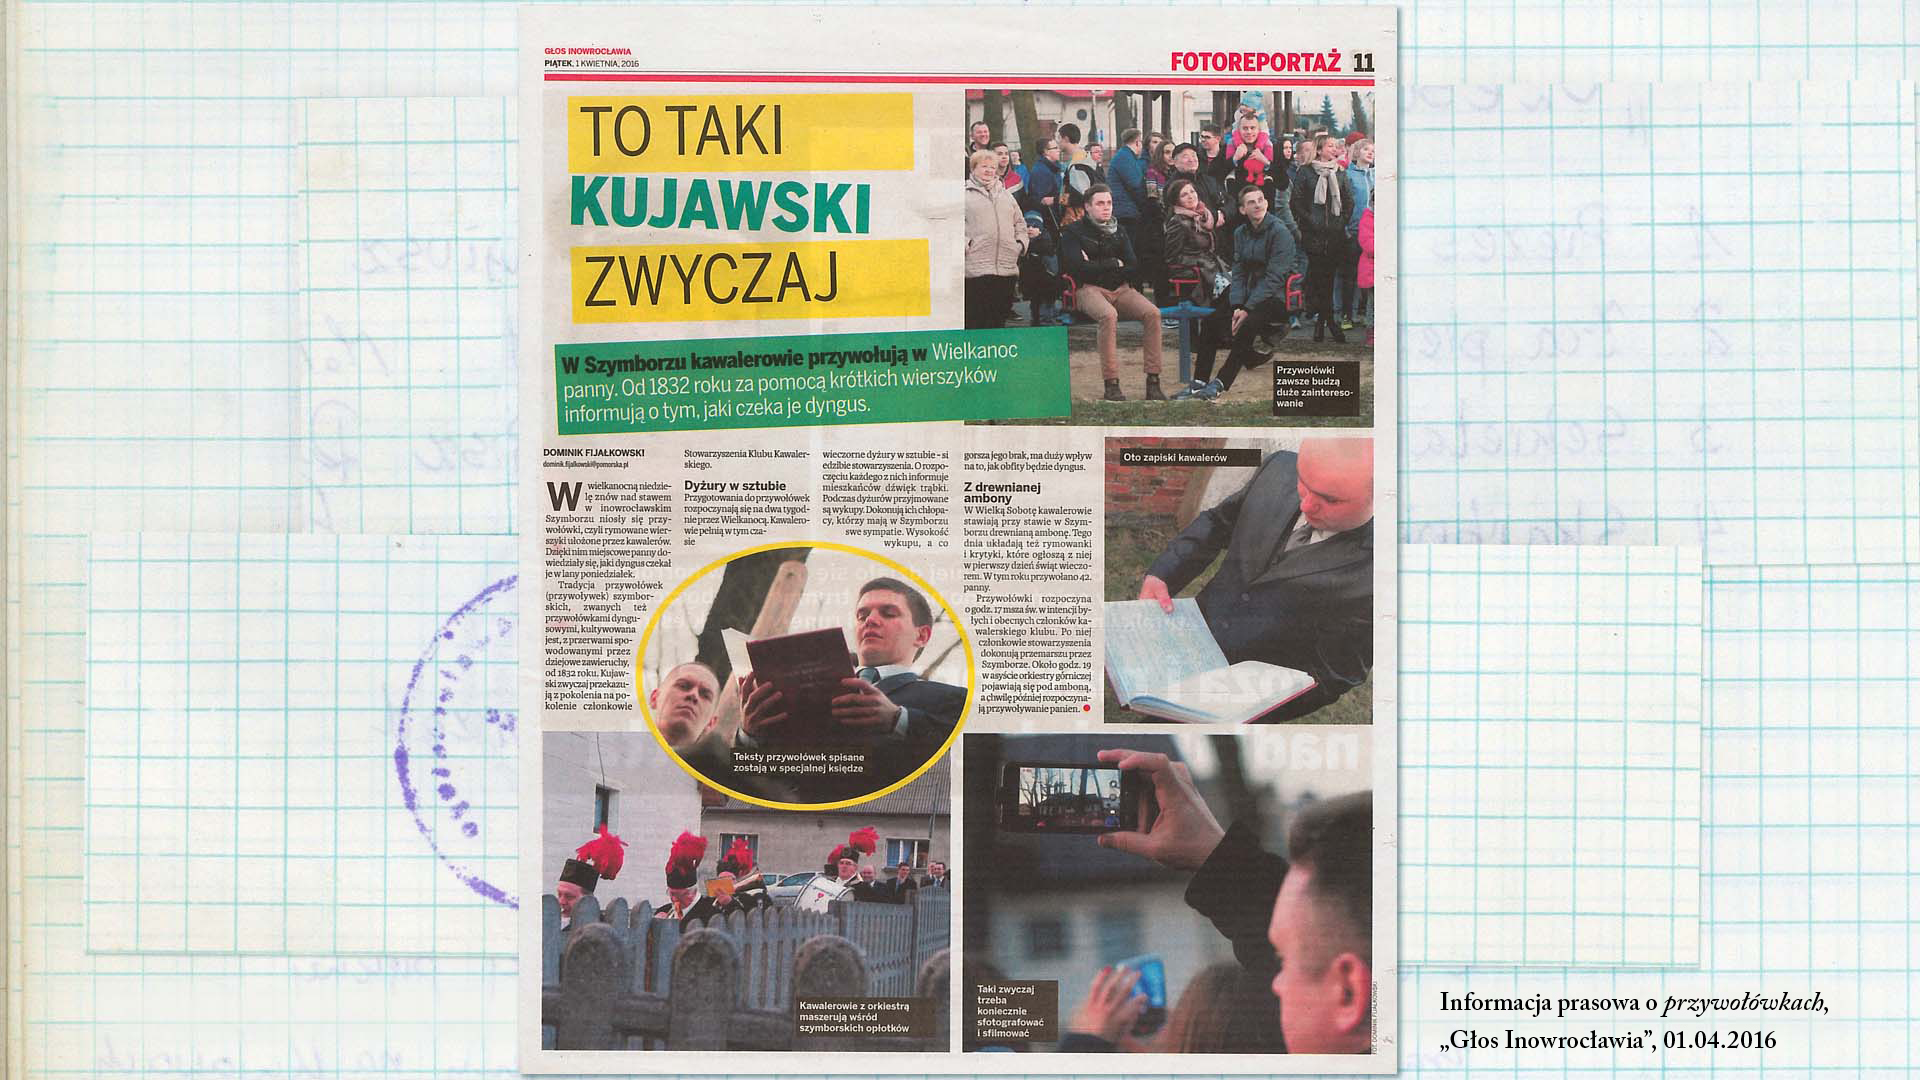 Informacja prasowa o przywołówkach, „Głos Inowrocławia’, 01.04. 2016 Skan w kolorze. Artykuł w gazecie, zatytułowany: „To taki kujawski zwyczaj”.